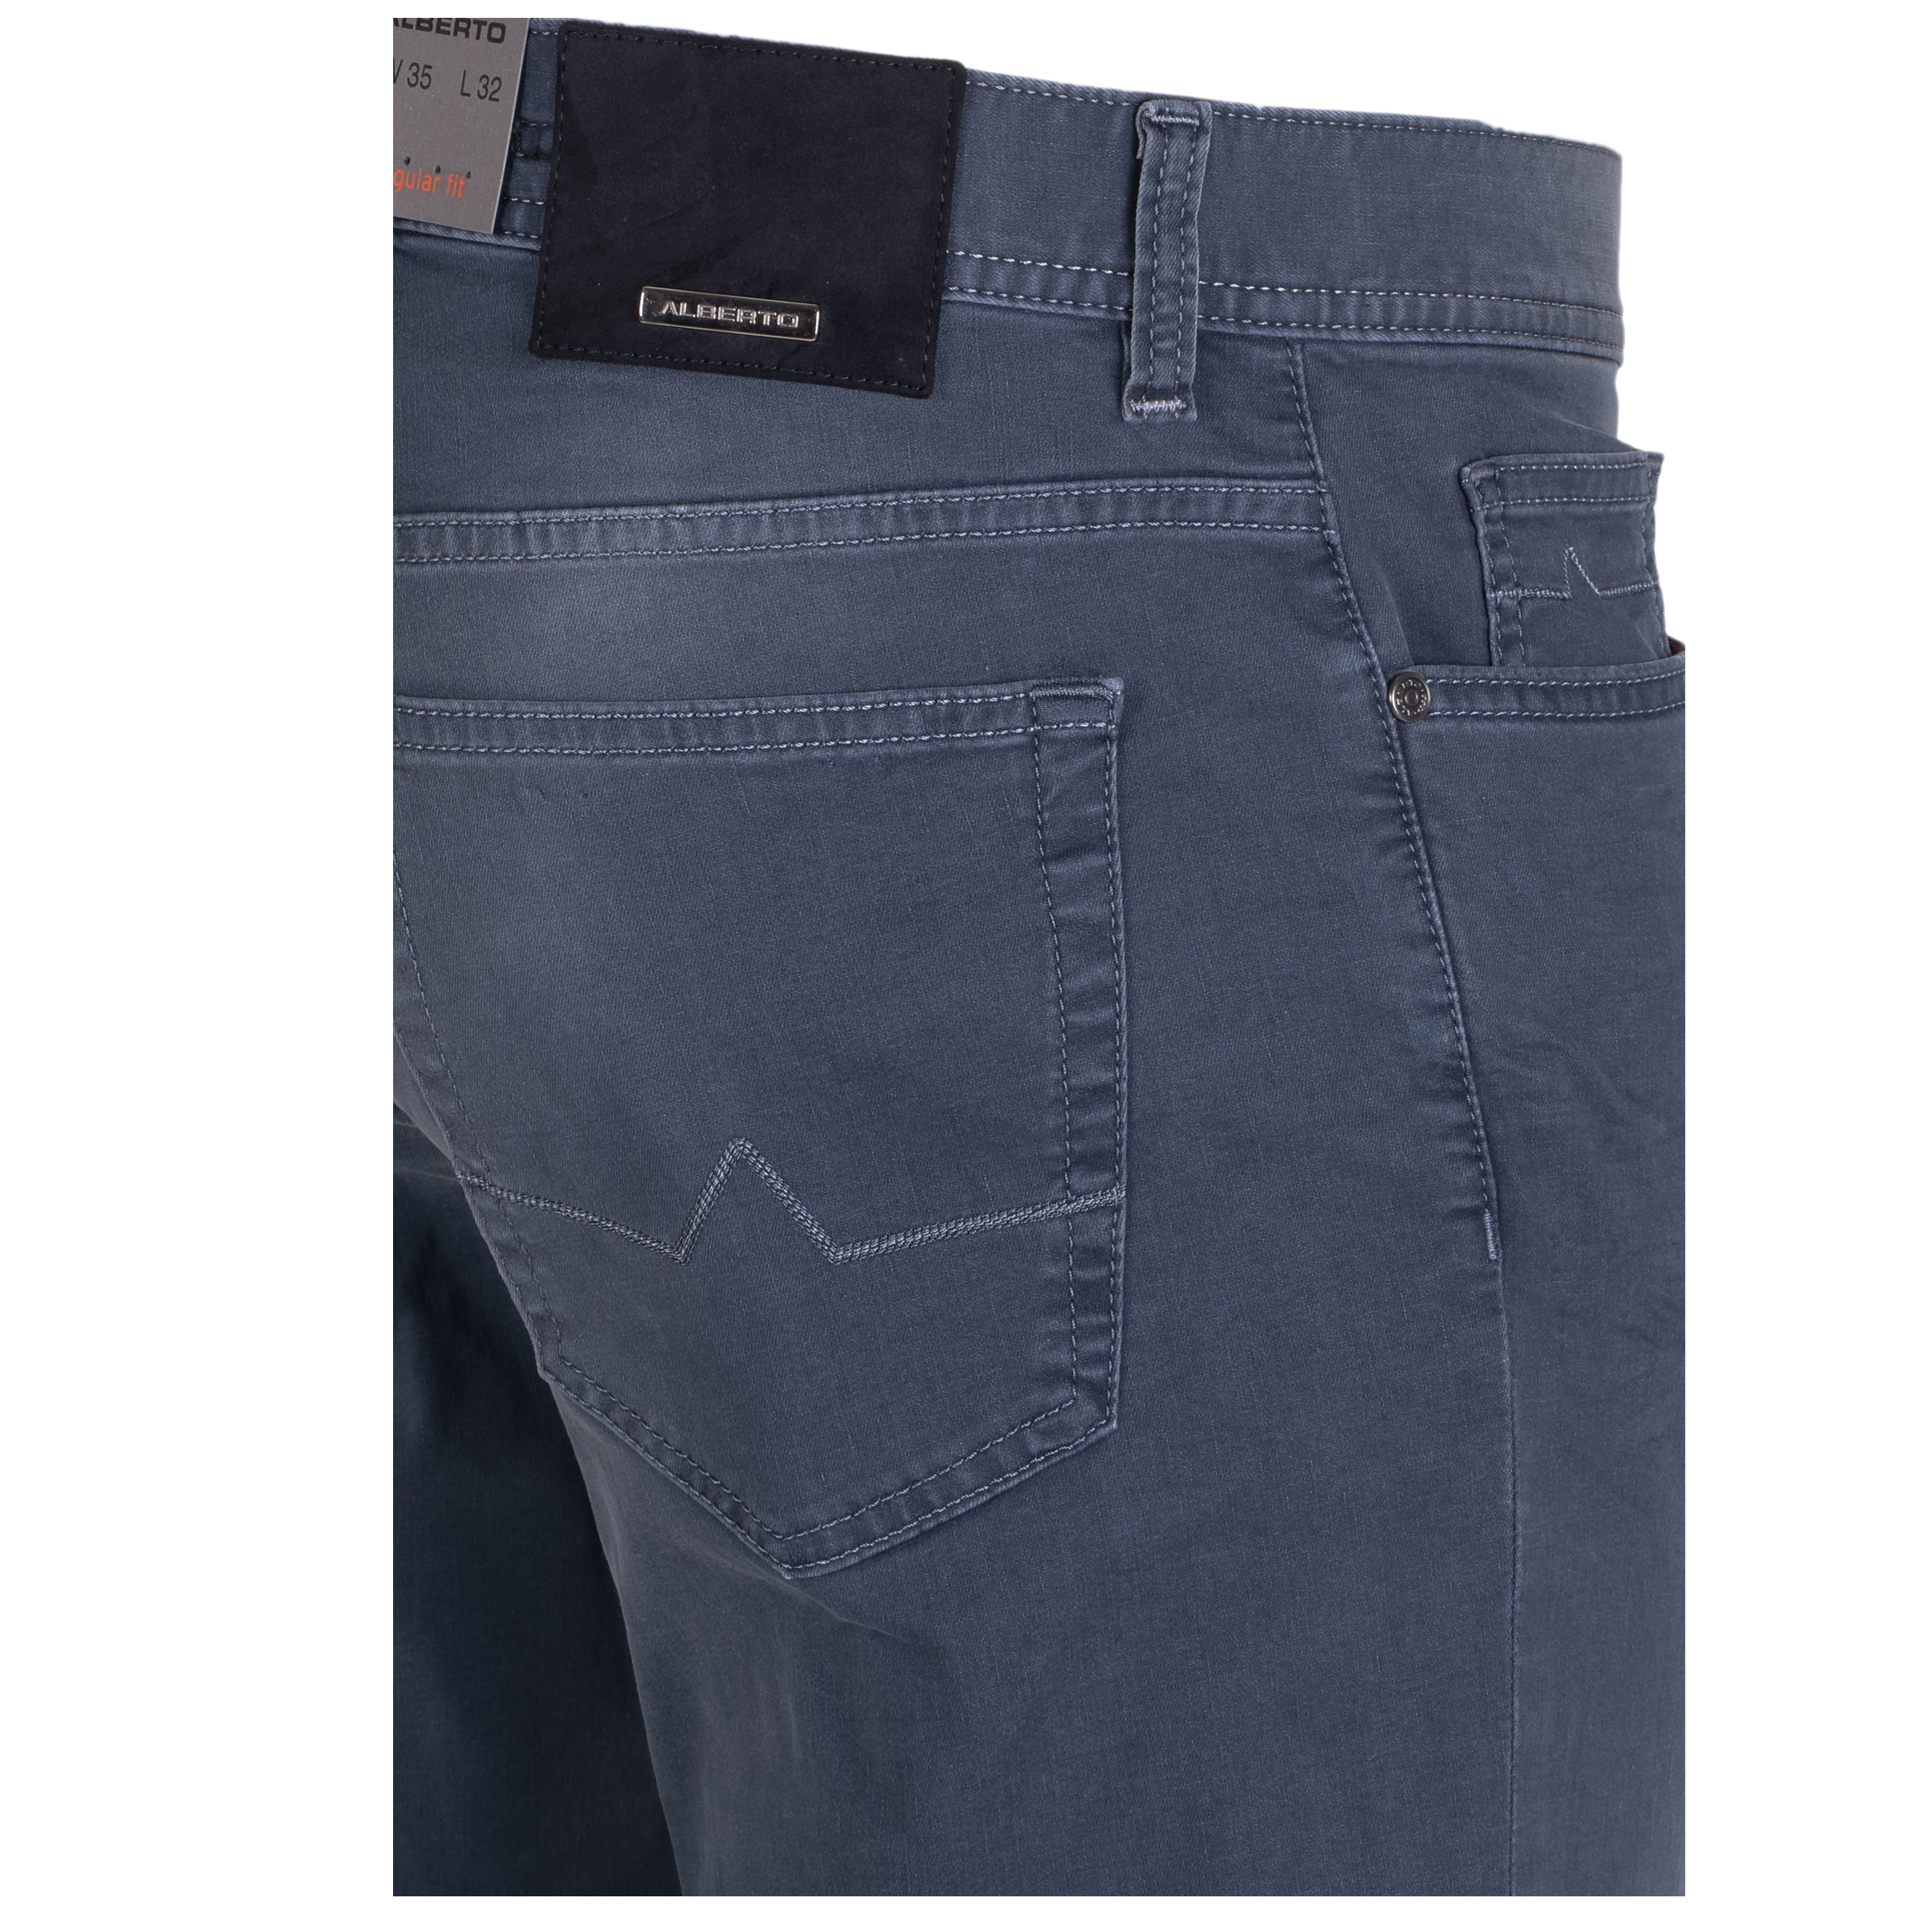 Alberto Jeans Pipe regular fit leichte Qualität 38/34 grau